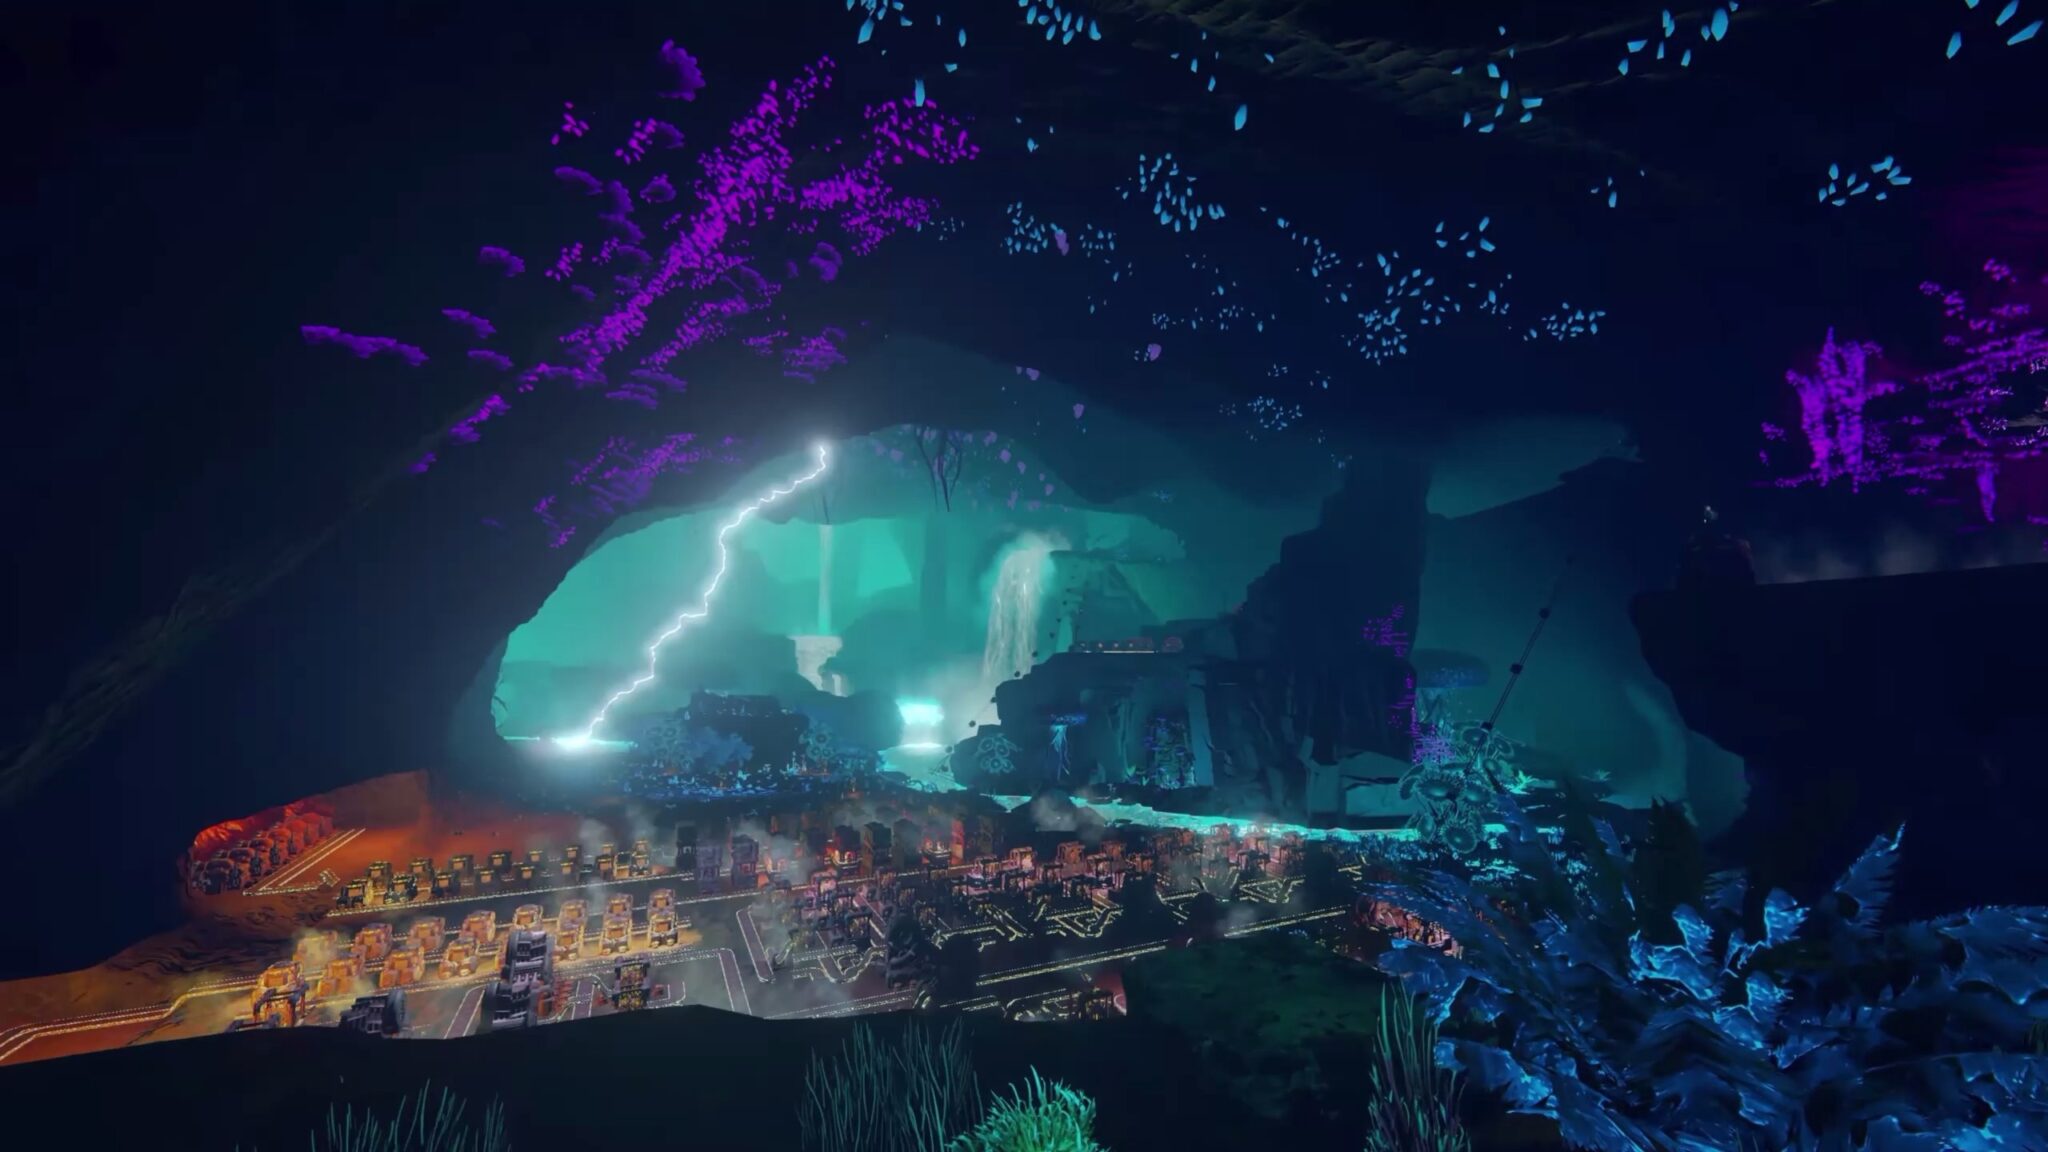 (De ondergrondse spelonken van Techtonica doen denken aan de Blackreach spelonk van Skyrim. De bliksem op de achtergrond suggereert weersverschijnselen en rampen).